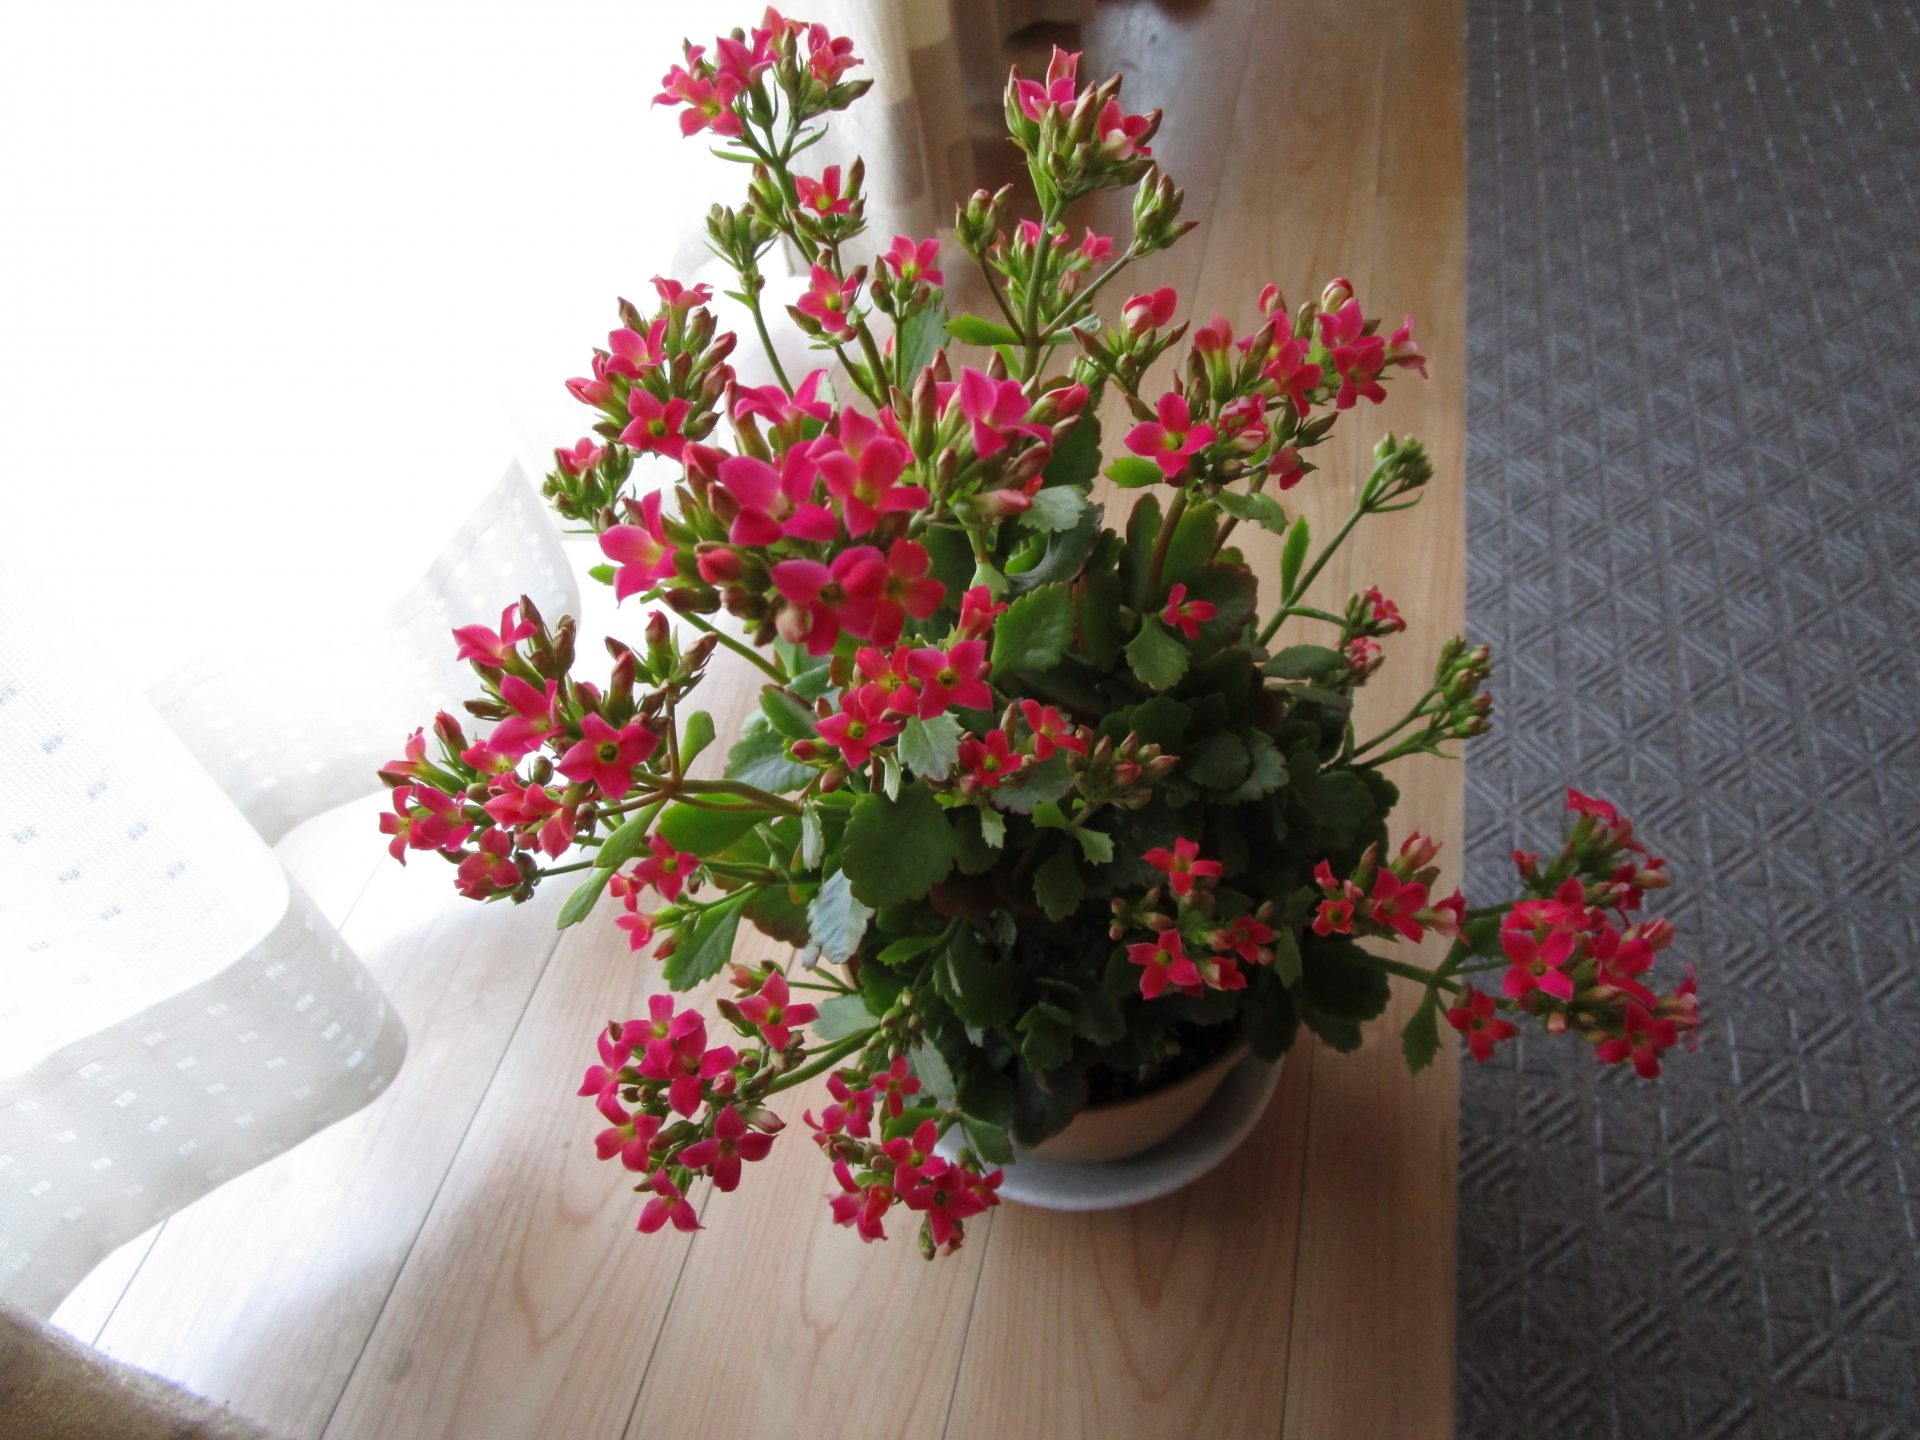 カランコエの育て方室内版 花が咲かないとき 植え替え 切り戻しなど